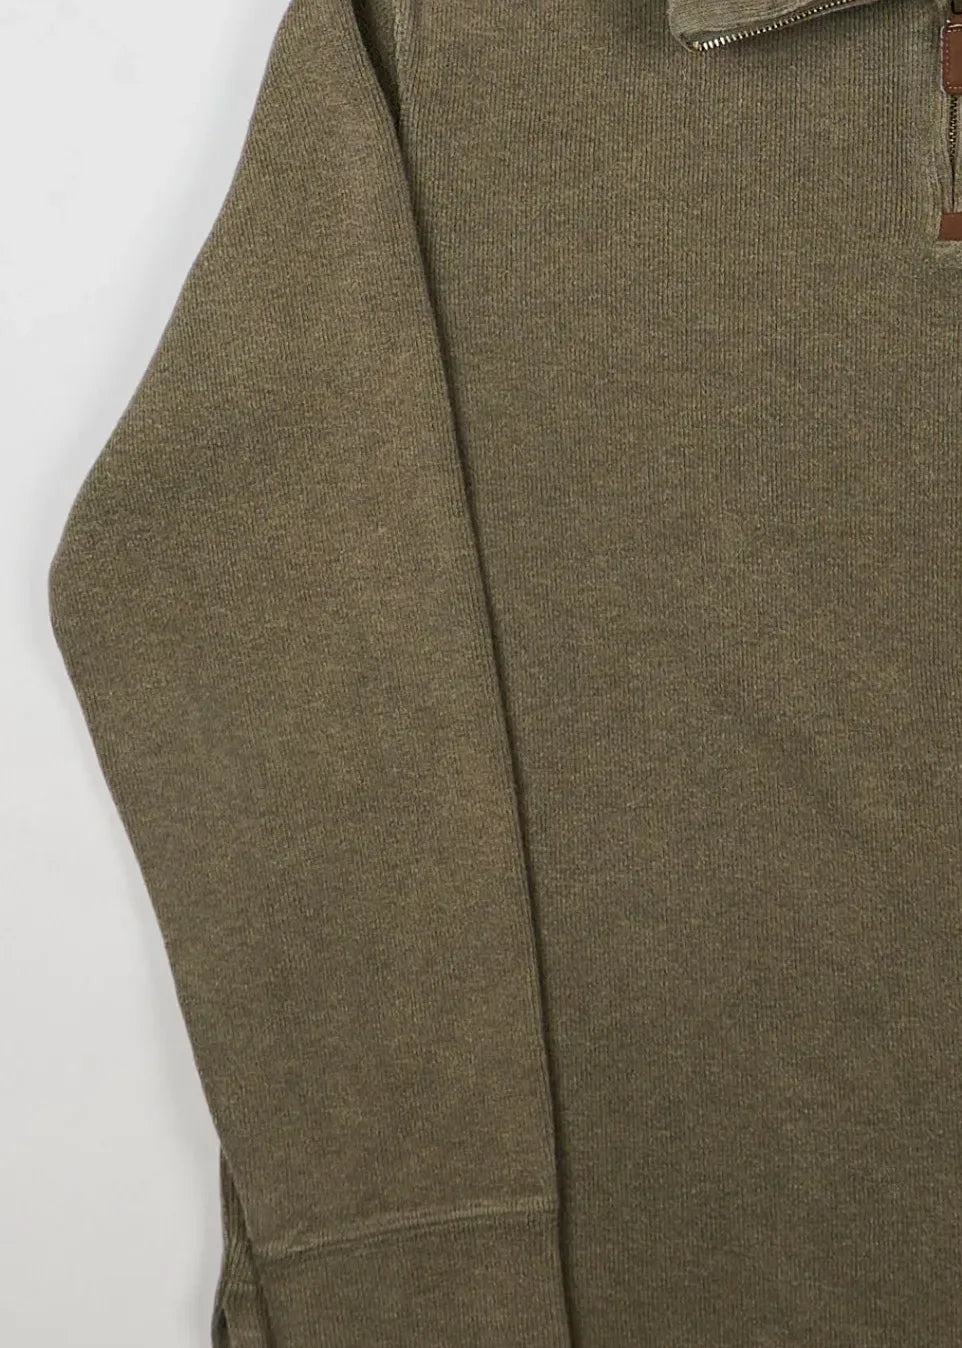 Ralph Lauren - Sweatshirt (M) Left